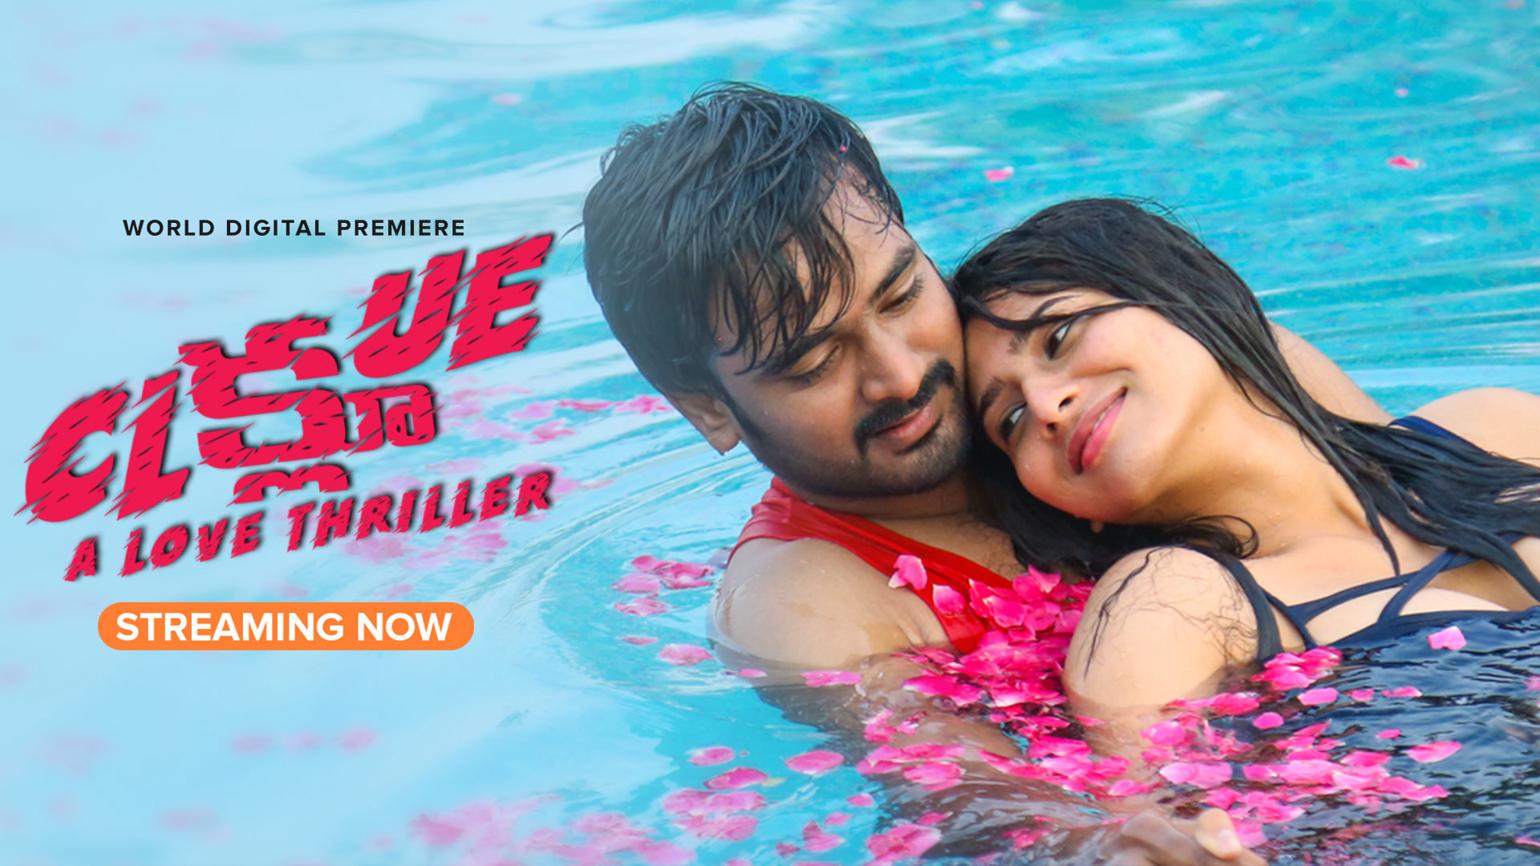 Watch Clue (Telugu) Full Movie Online Download Now